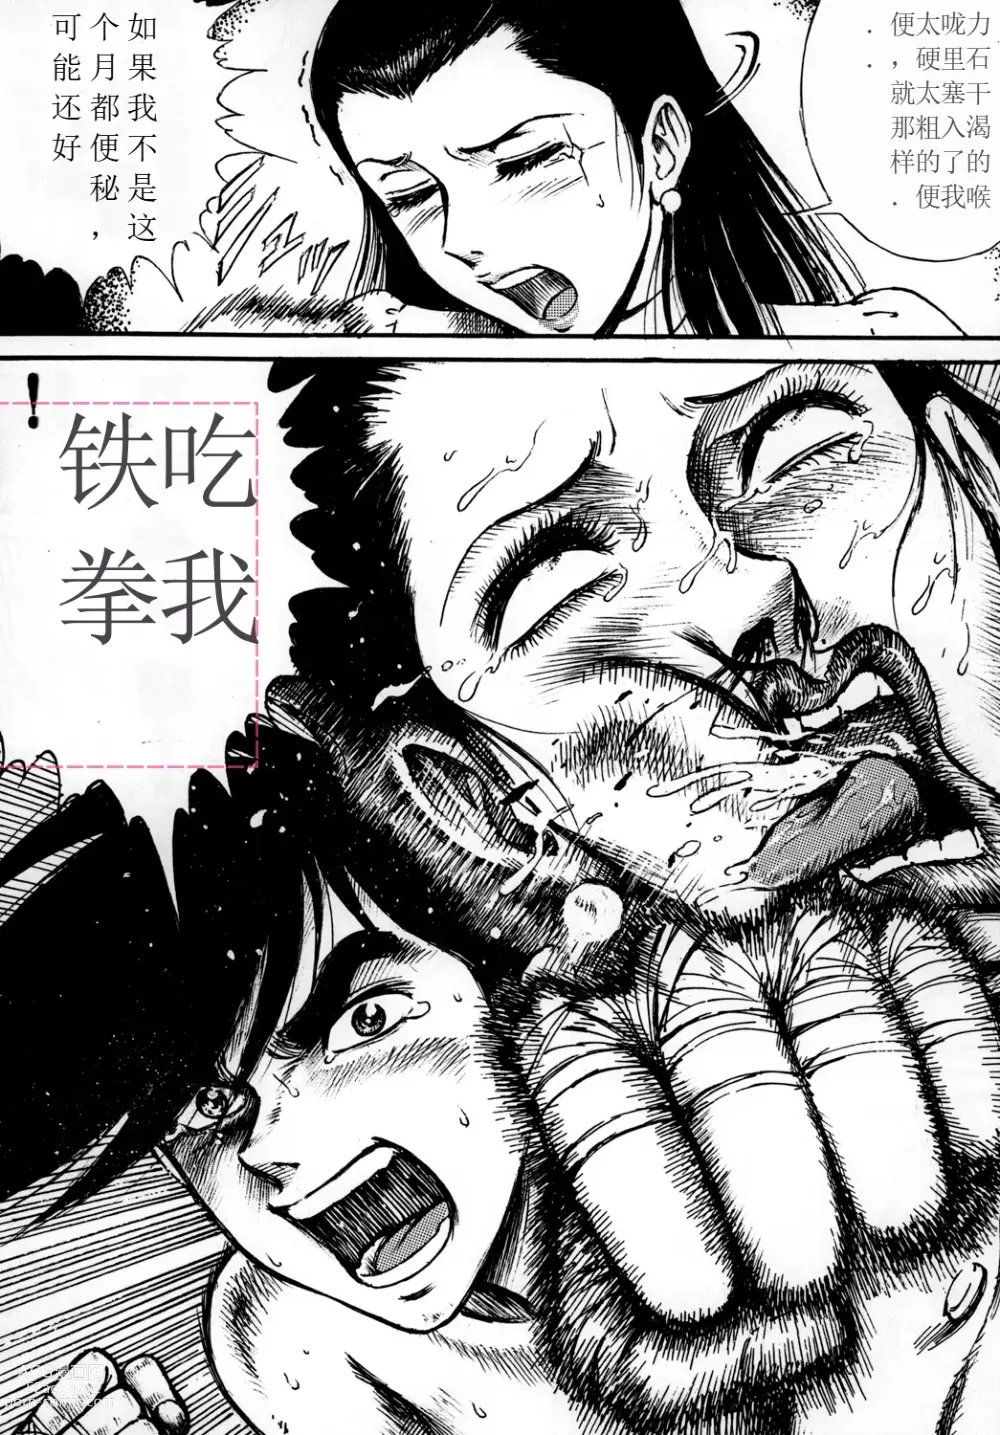 Page 9 of doujinshi Youjinbou Otaku Matsuri 7